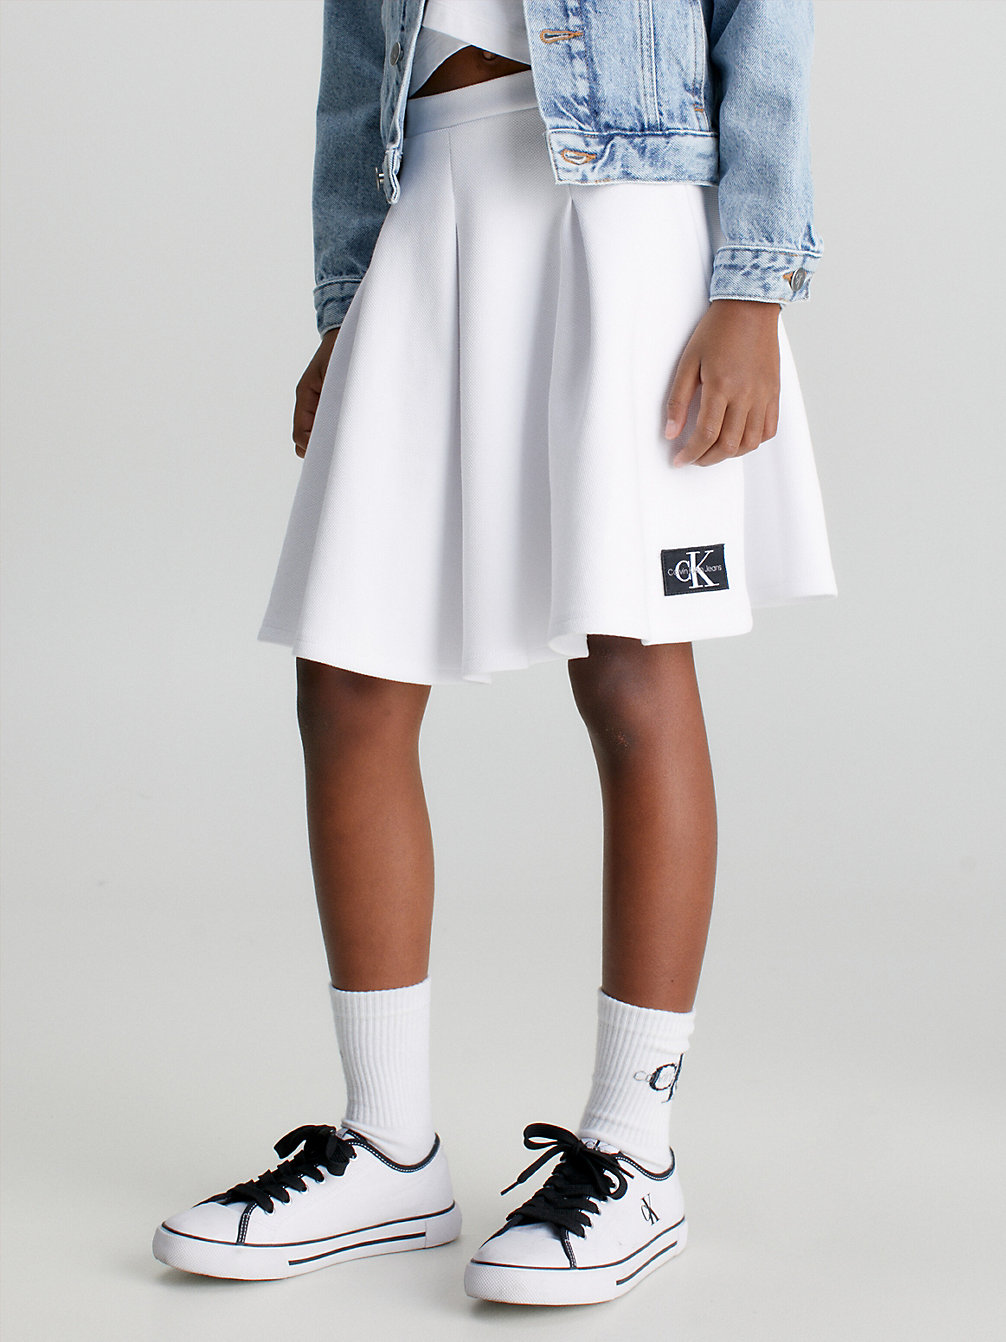 BRIGHT WHITE Pique Pleated Skirt undefined girls Calvin Klein